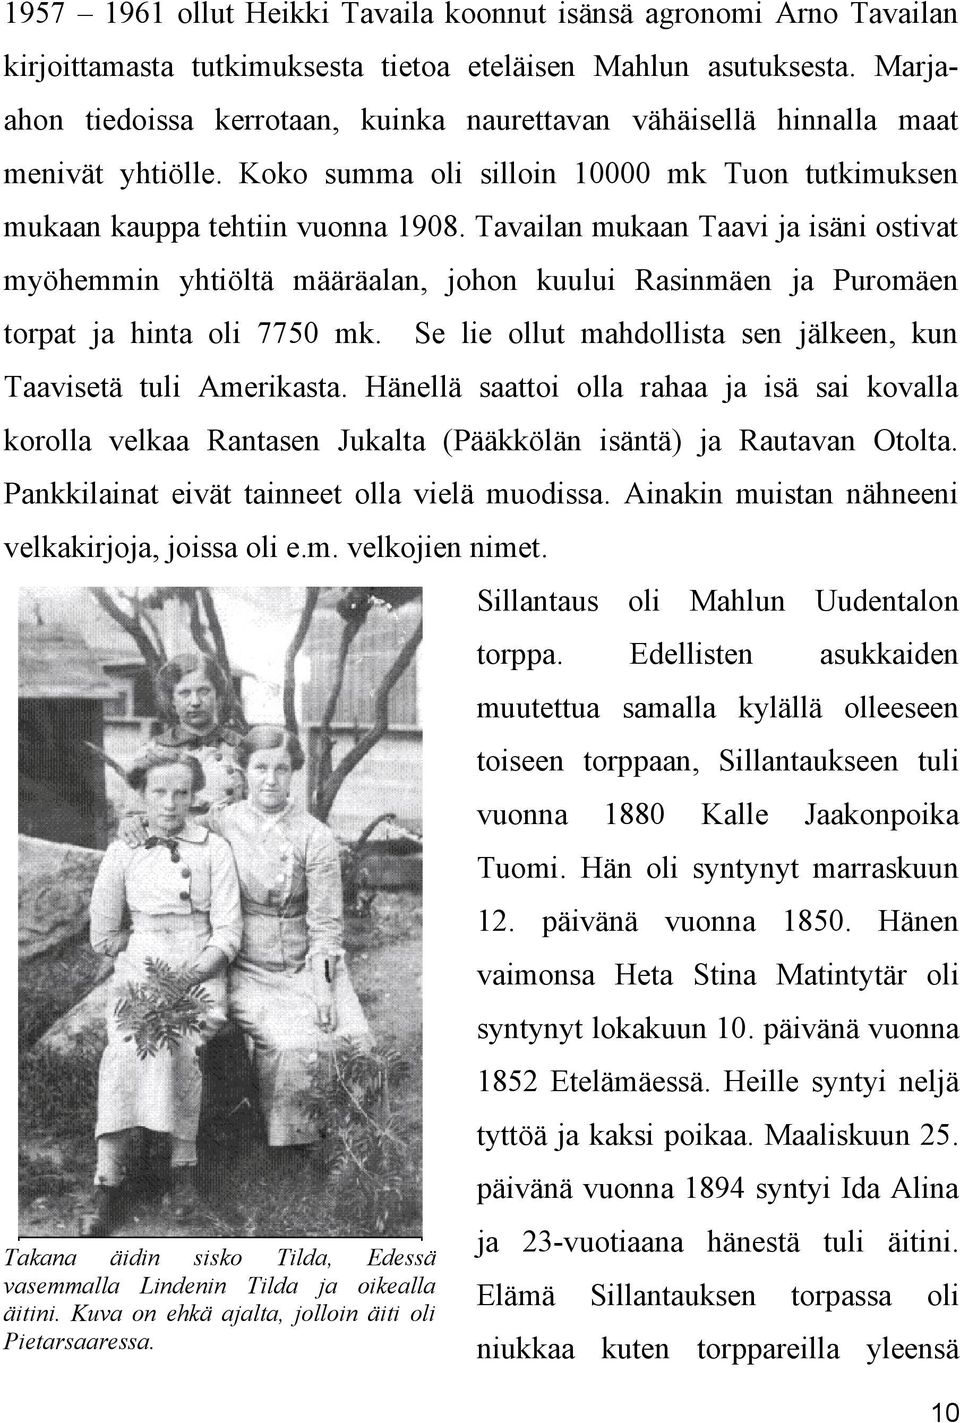 Tavailan mukaan Taavi ja isäni ostivat myöhemmin yhtiöltä määräalan, johon kuului Rasinmäen ja Puromäen torpat ja hinta oli 7750 mk.